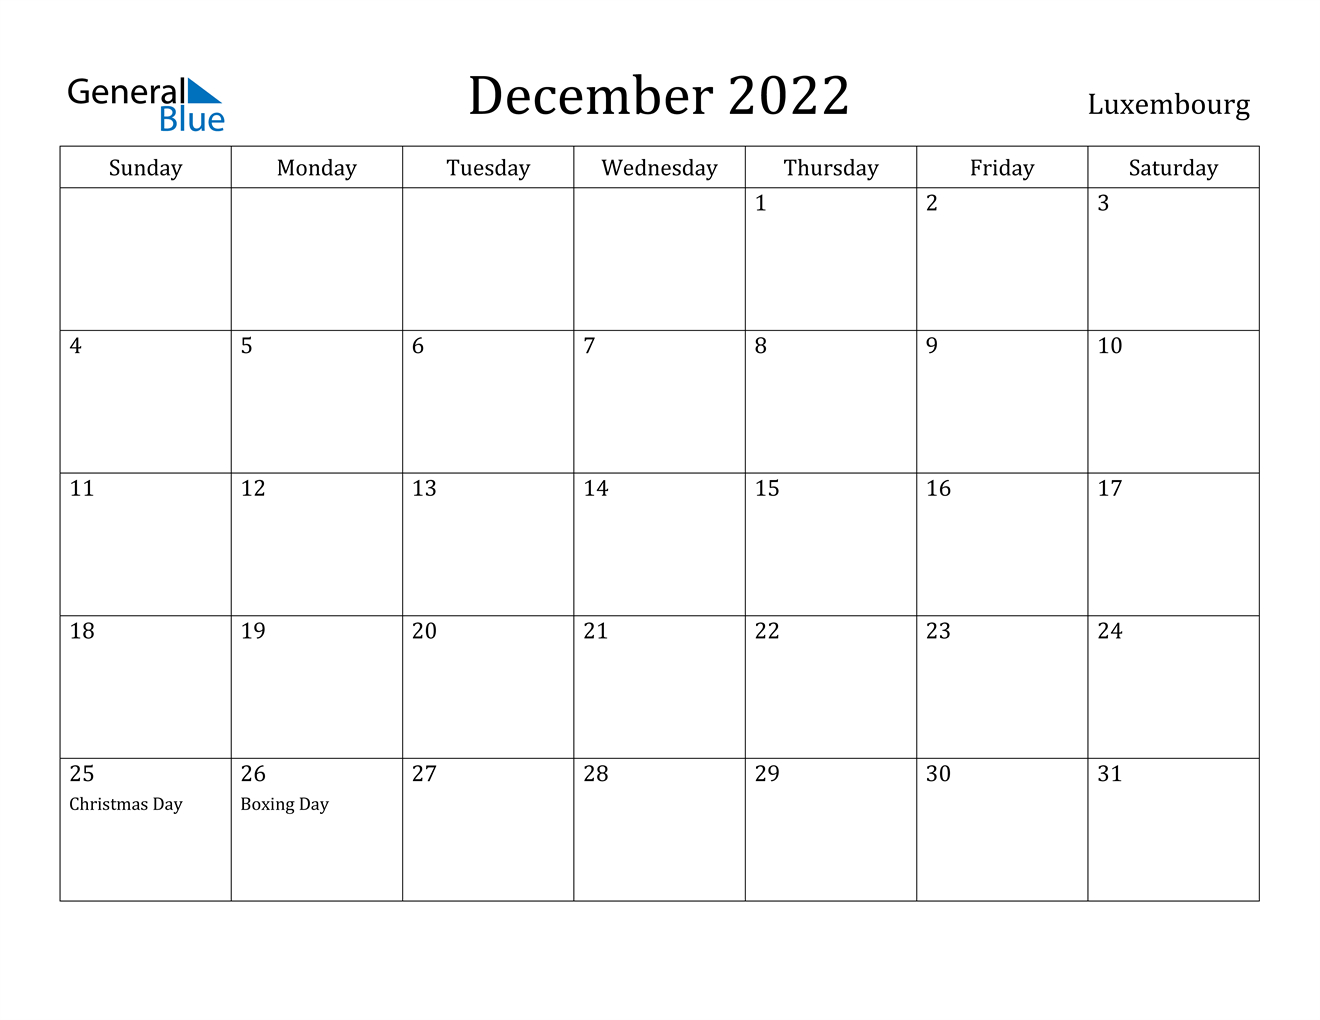 December 2022 Calendar - Luxembourg